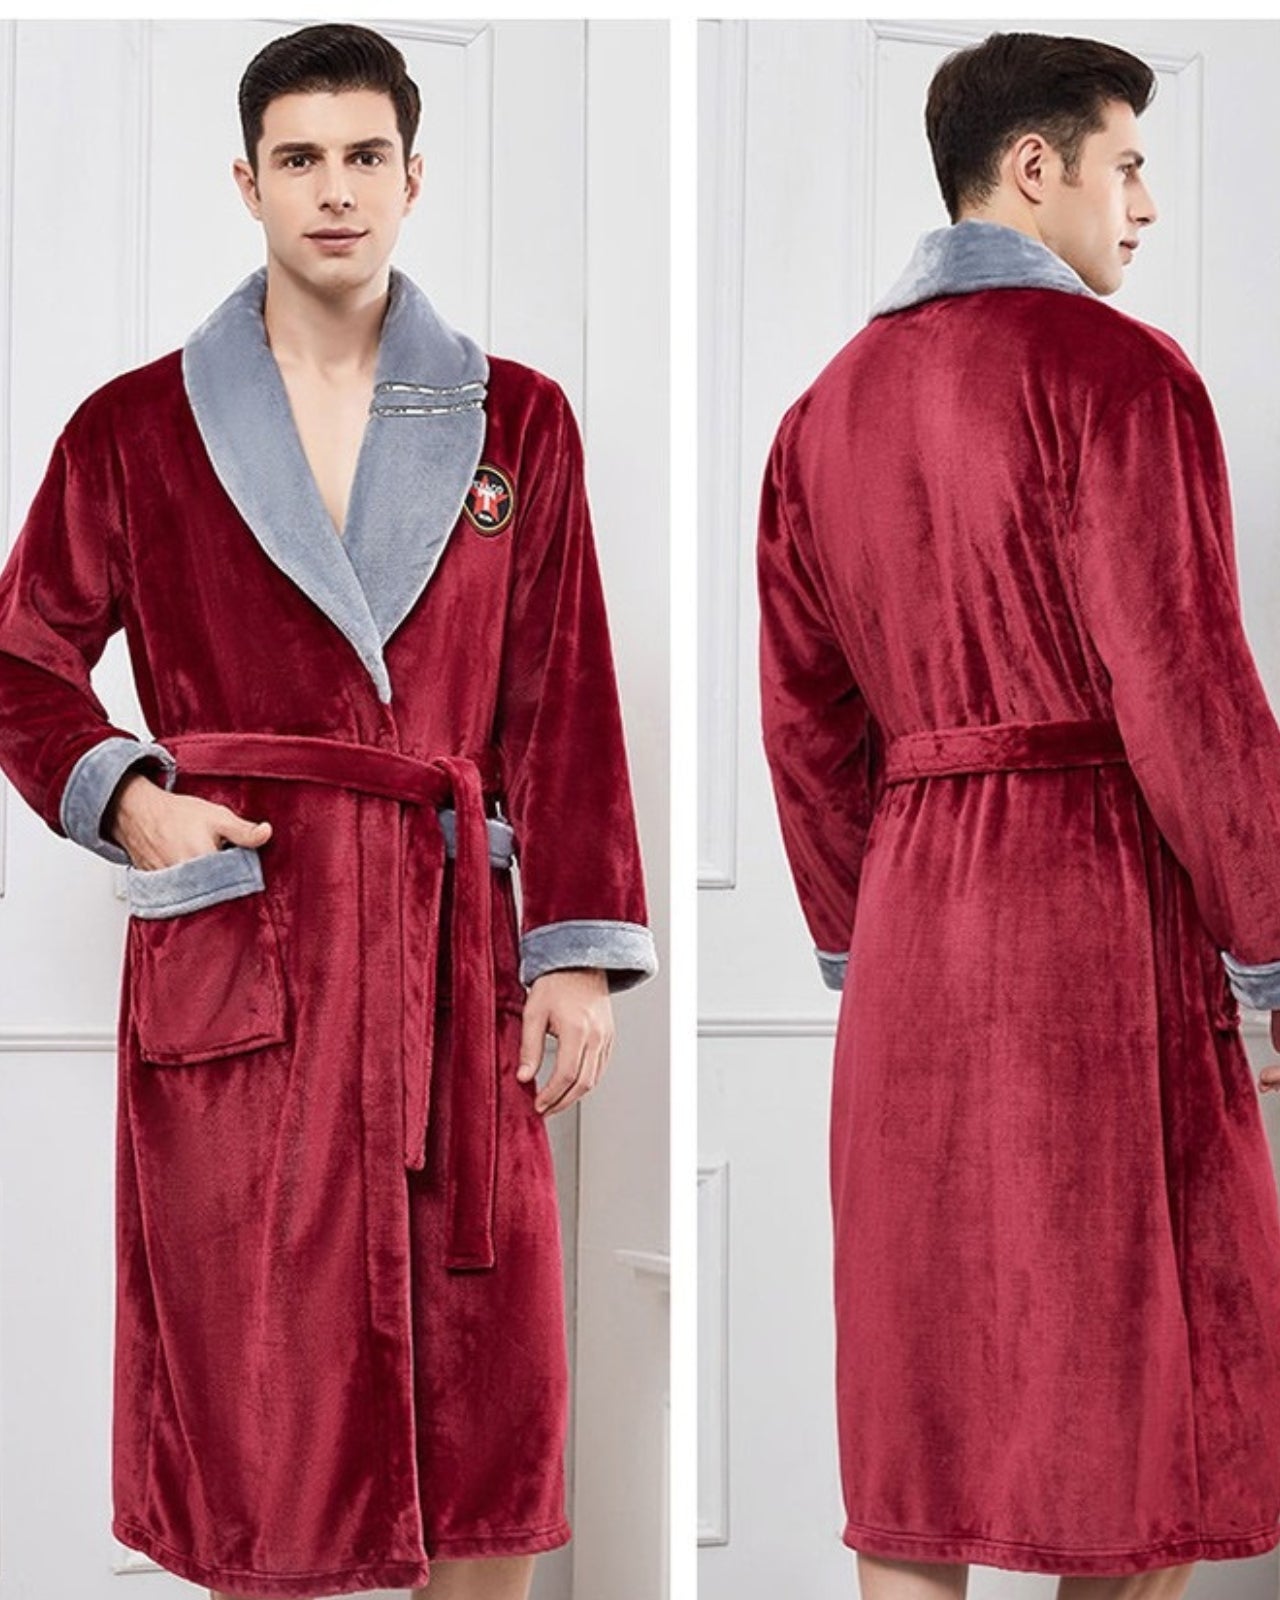 Peignoir homme polaire kimono col en V rouge et gris